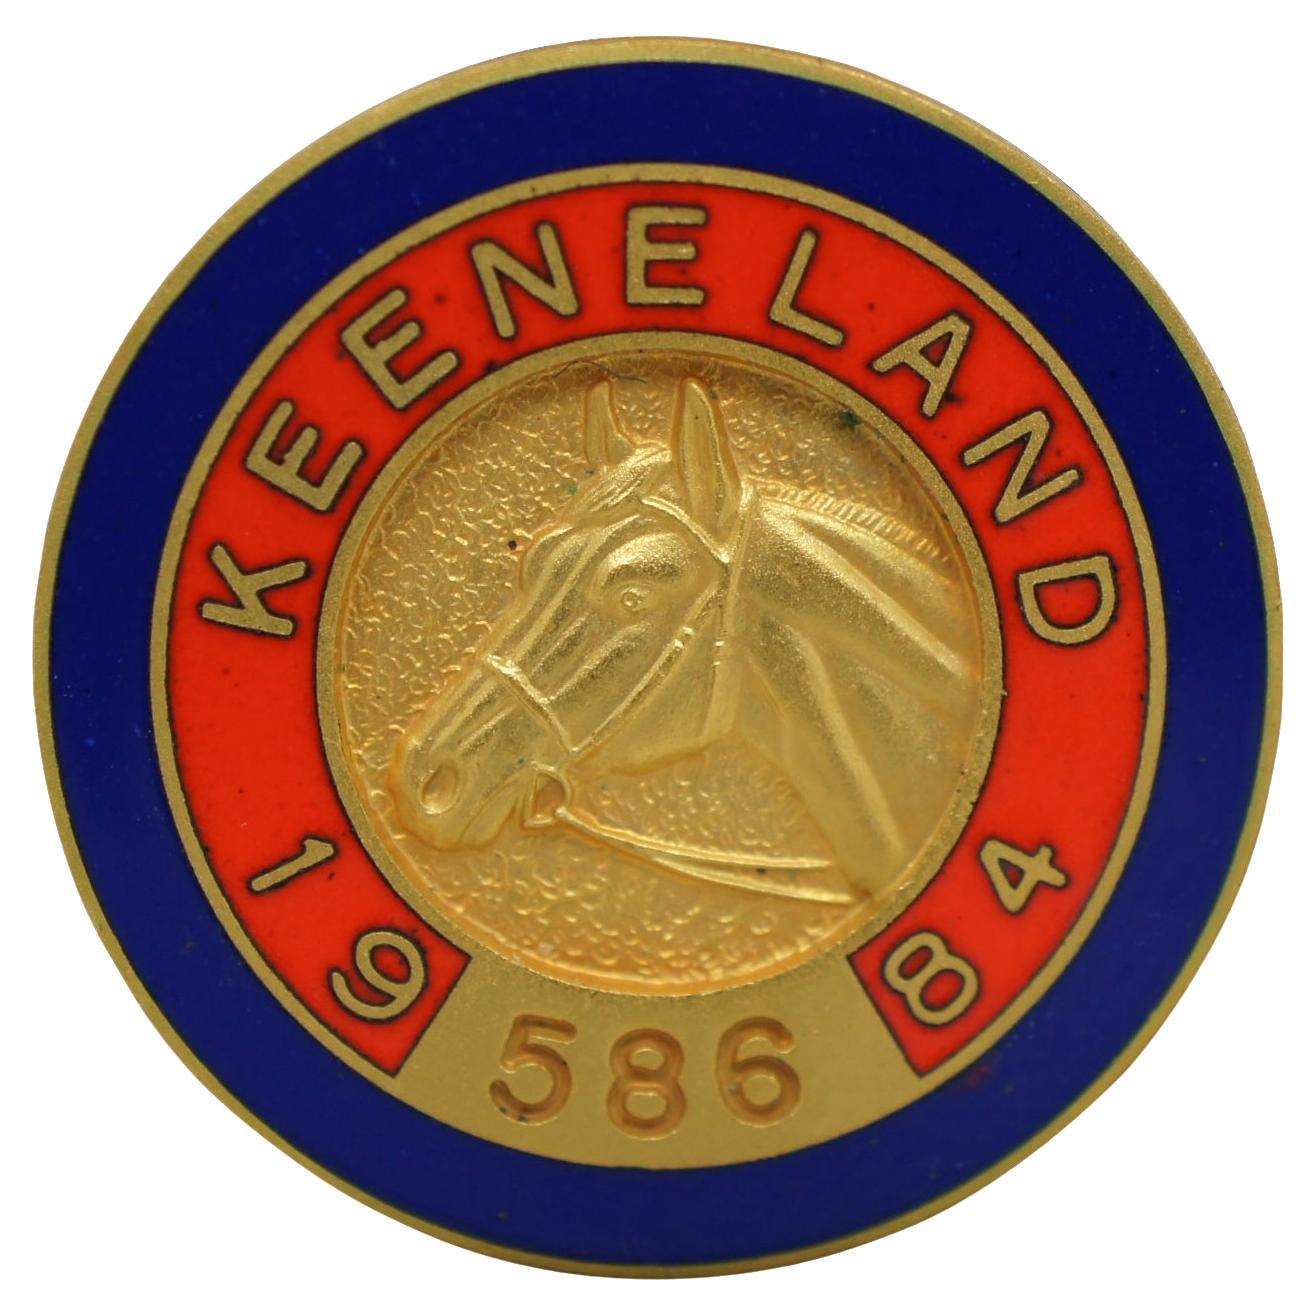 1984 Vintage Keenland Member Pin Enamel Badge Horse Racing Equestrian 1"